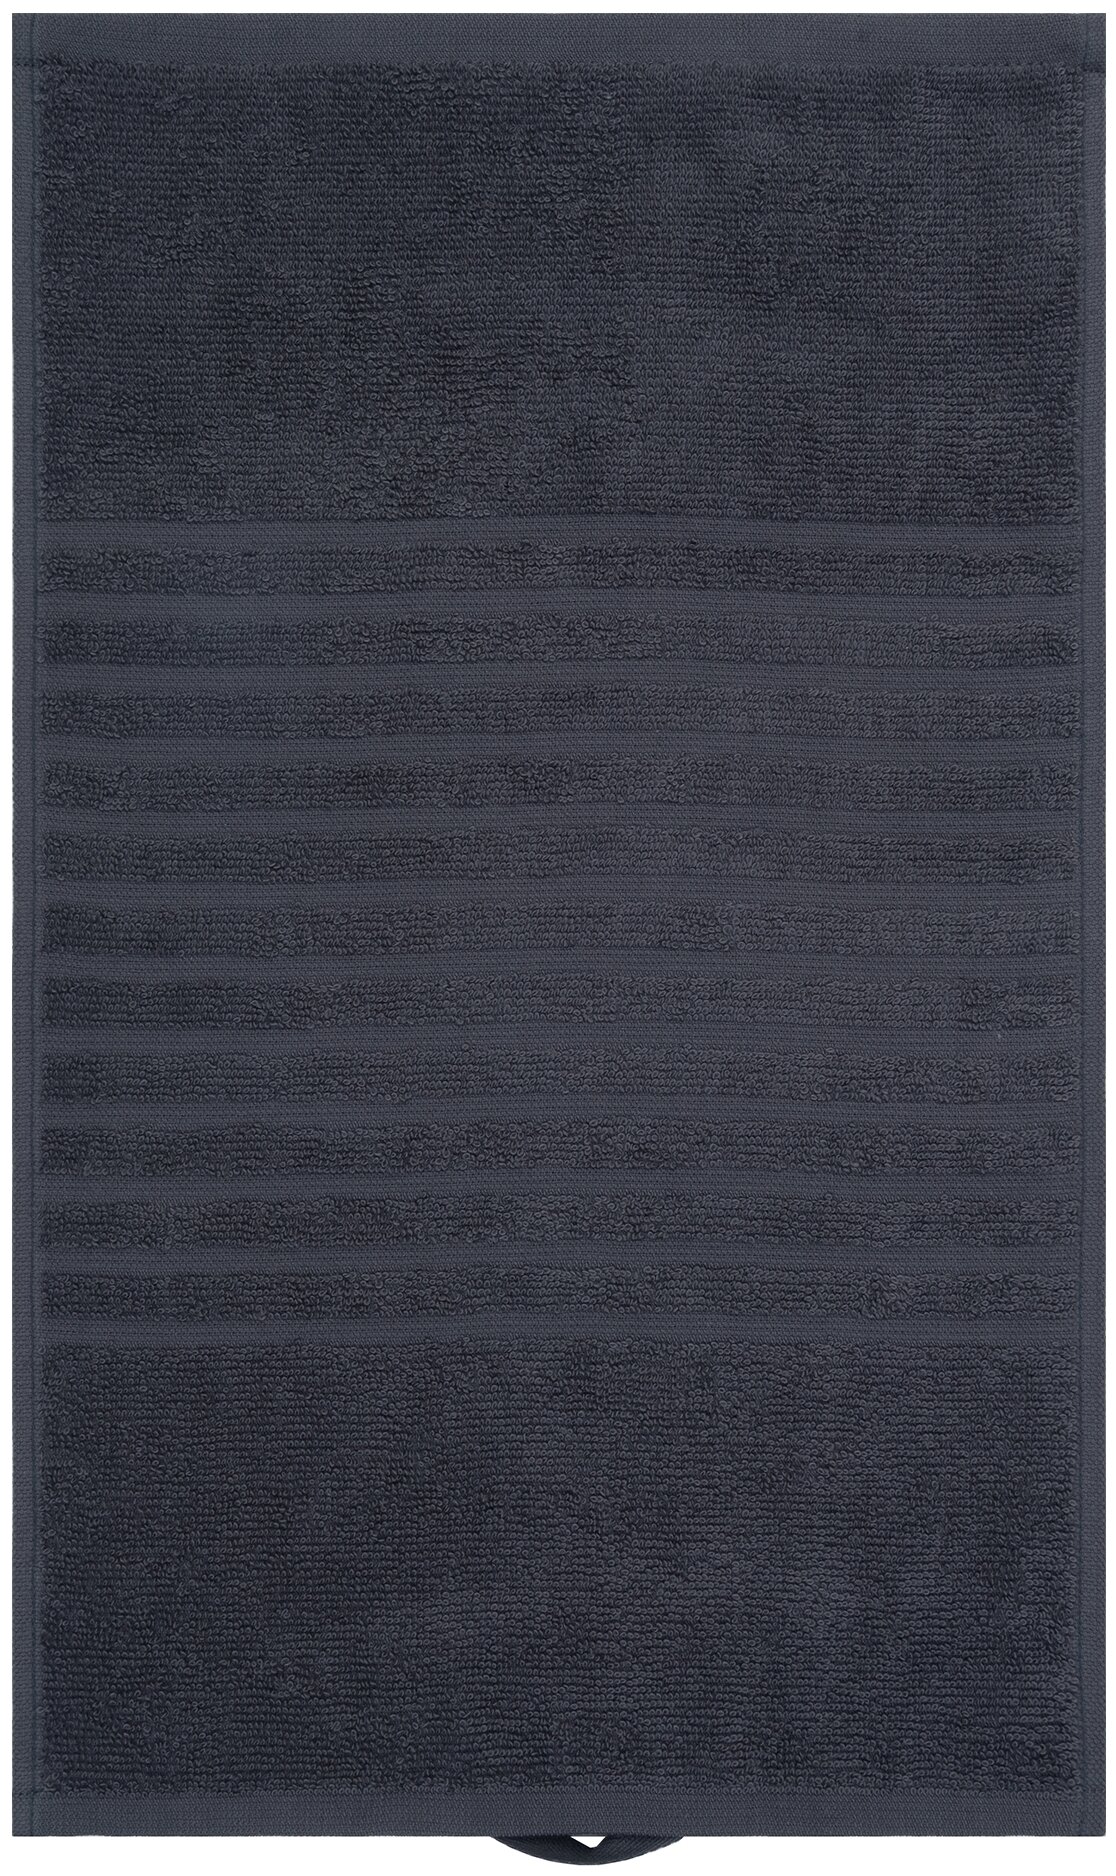 Салфетка махровая, полотенце для лица и рук, Донецкая мануфактура, 30Х50 см, цвет:темно-серый, 100% хлопок - фотография № 4